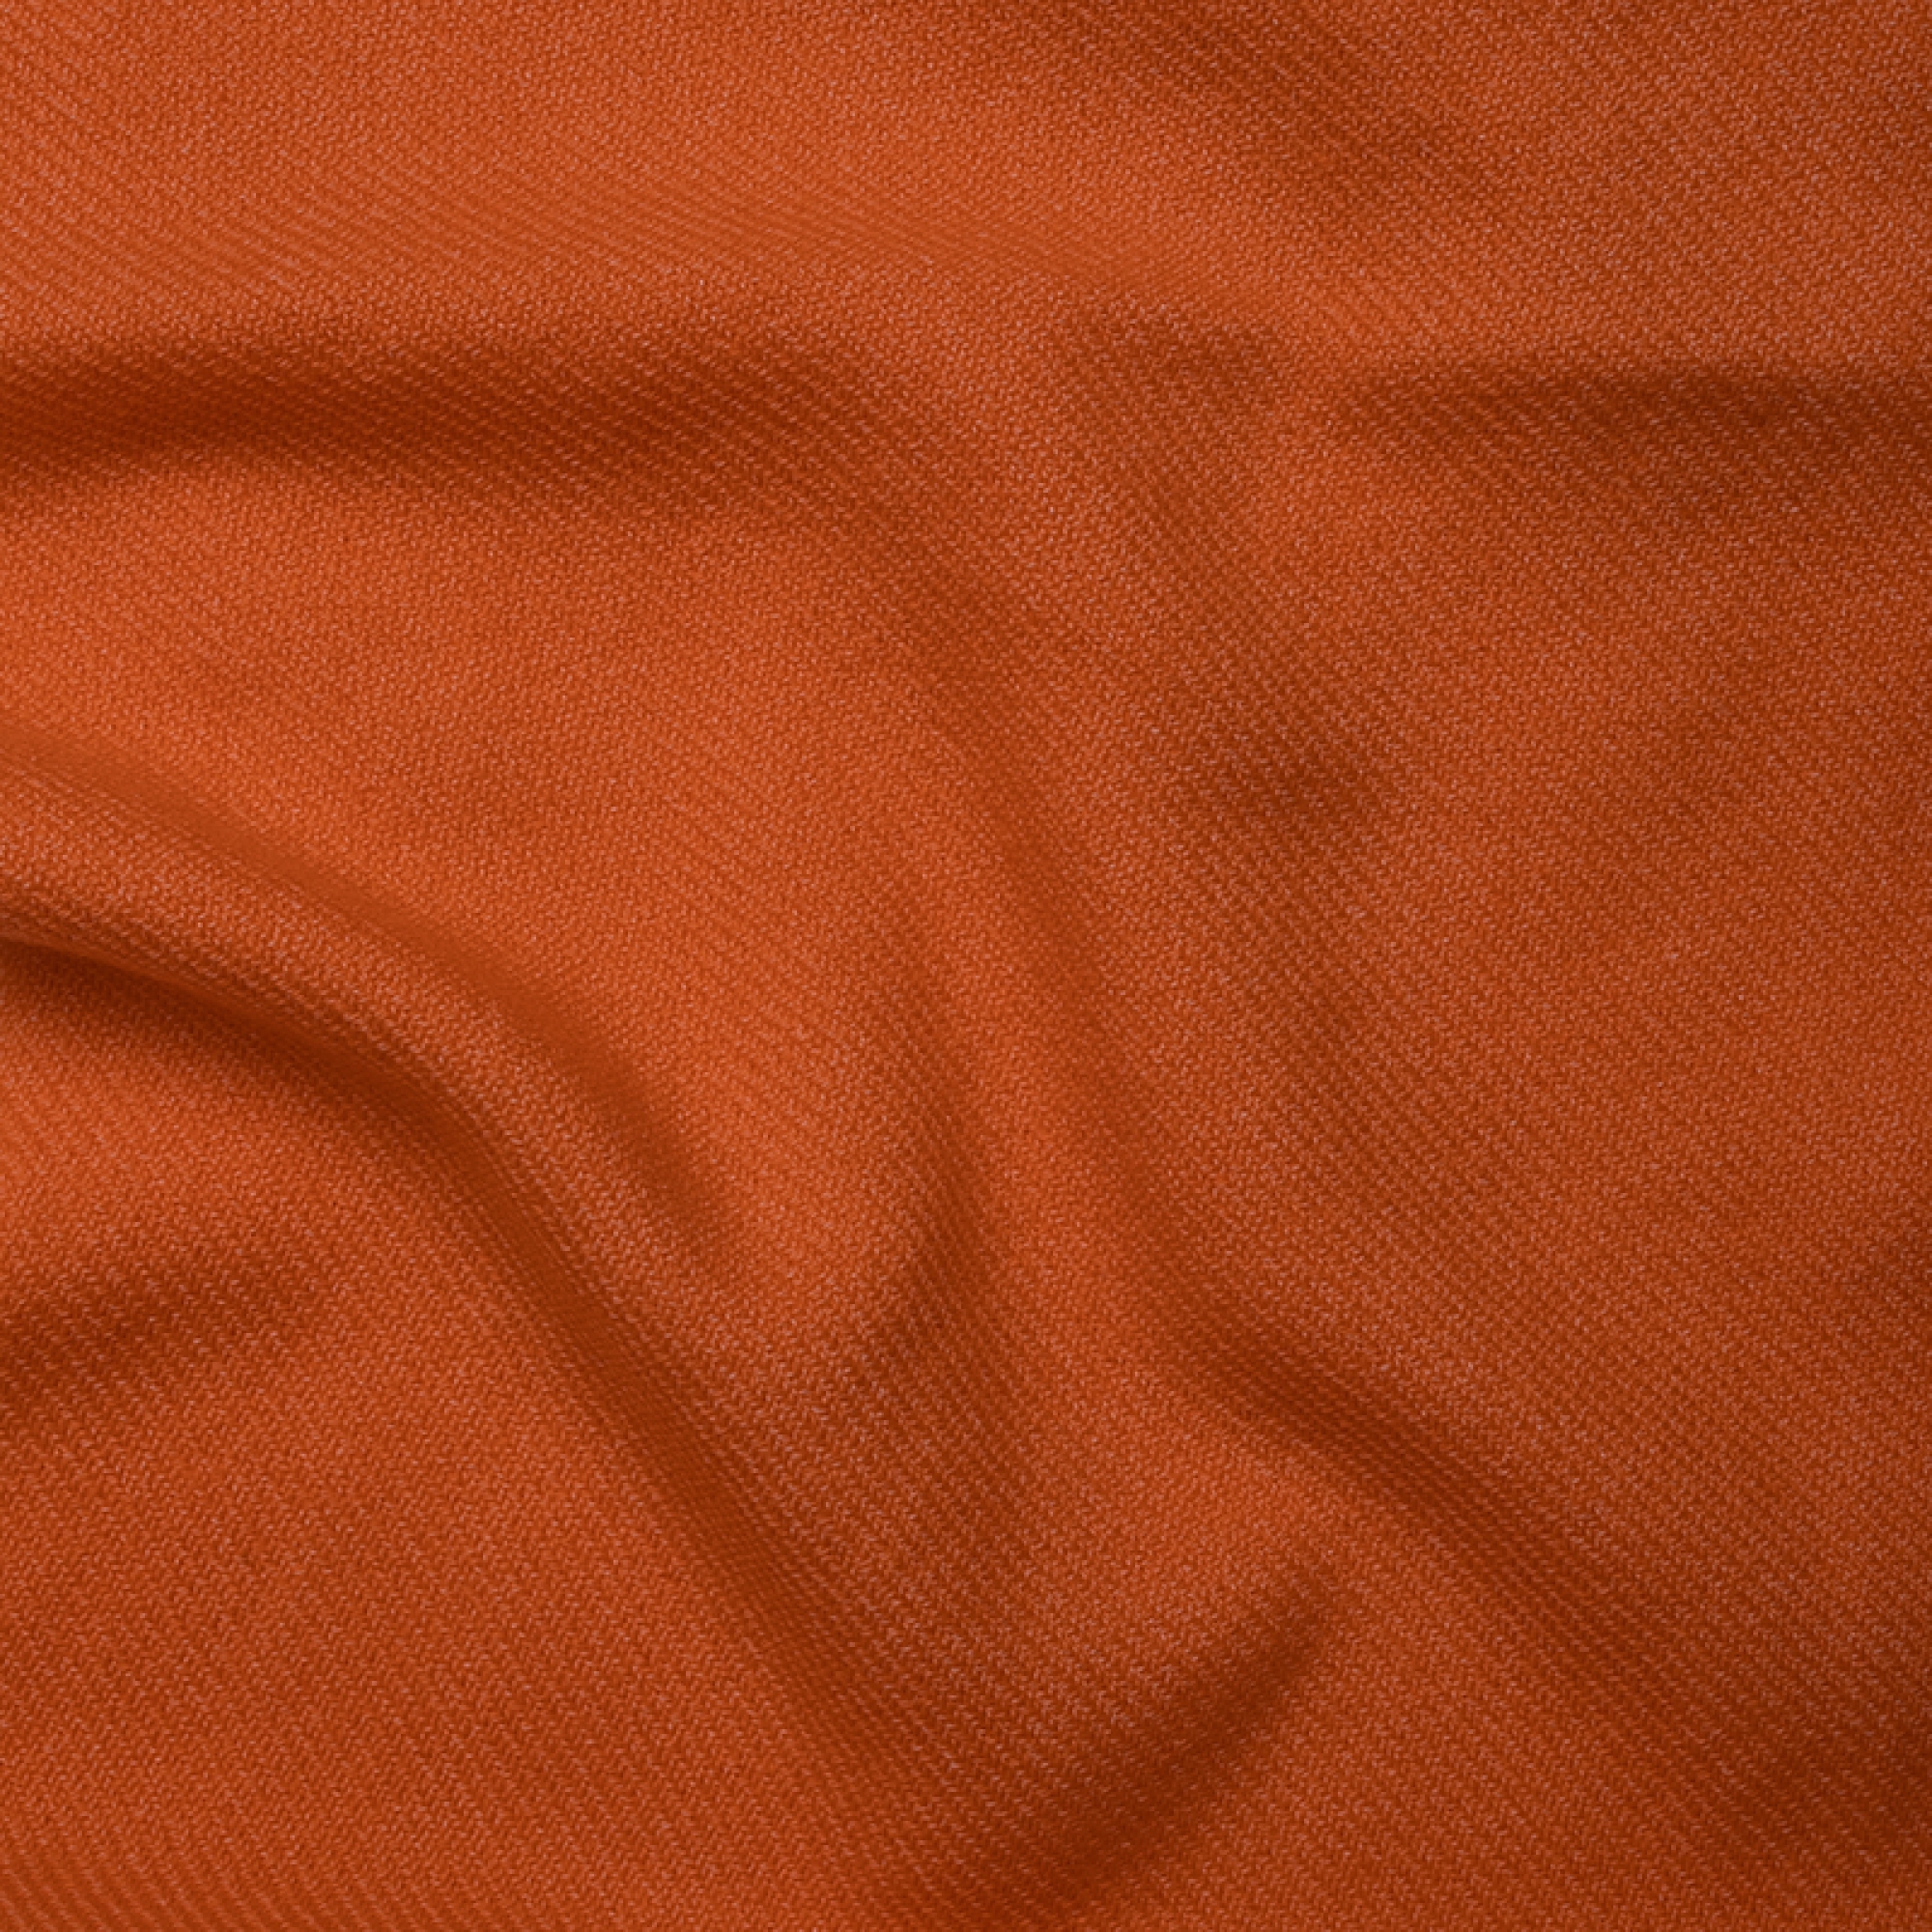 Cashmere uomo cocooning toodoo plain l 220 x 220 arancio 220x220cm